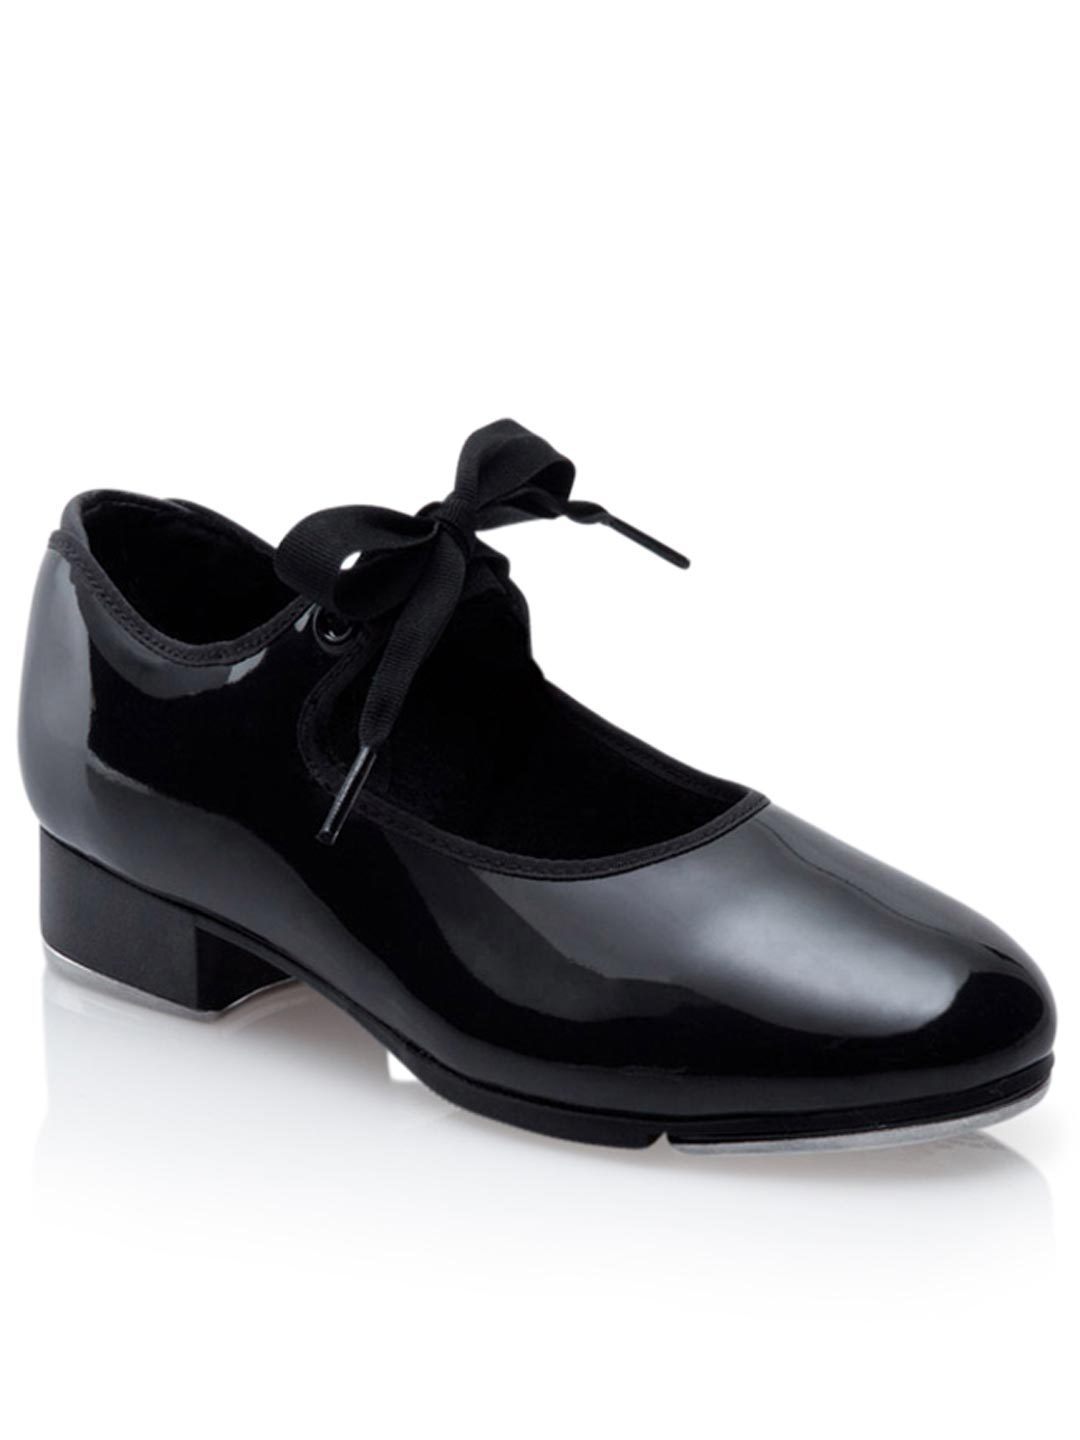 black patent tap shoes